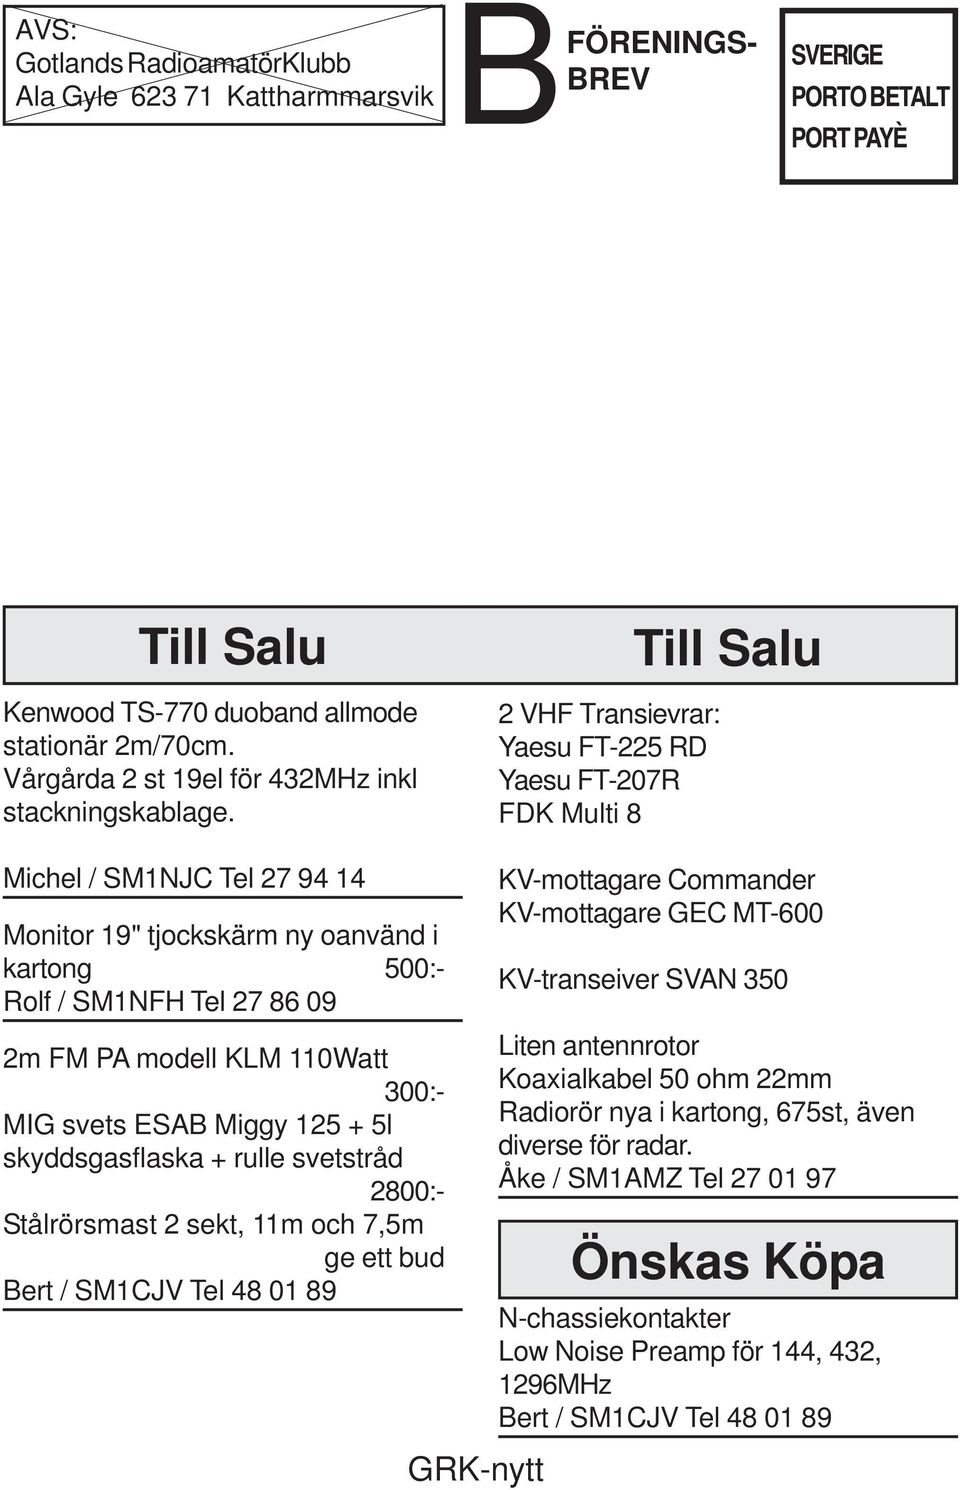 2 VHF Transievrar: Yaesu FT-225 RD Yaesu FT-207R FDK Multi 8 Till Salu Michel / SM1NJC Tel 27 94 14 Monitor 19" tjockskärm ny oanvänd i kartong 500:- Rolf / SM1NFH Tel 27 86 09 2m FM PA modell KLM